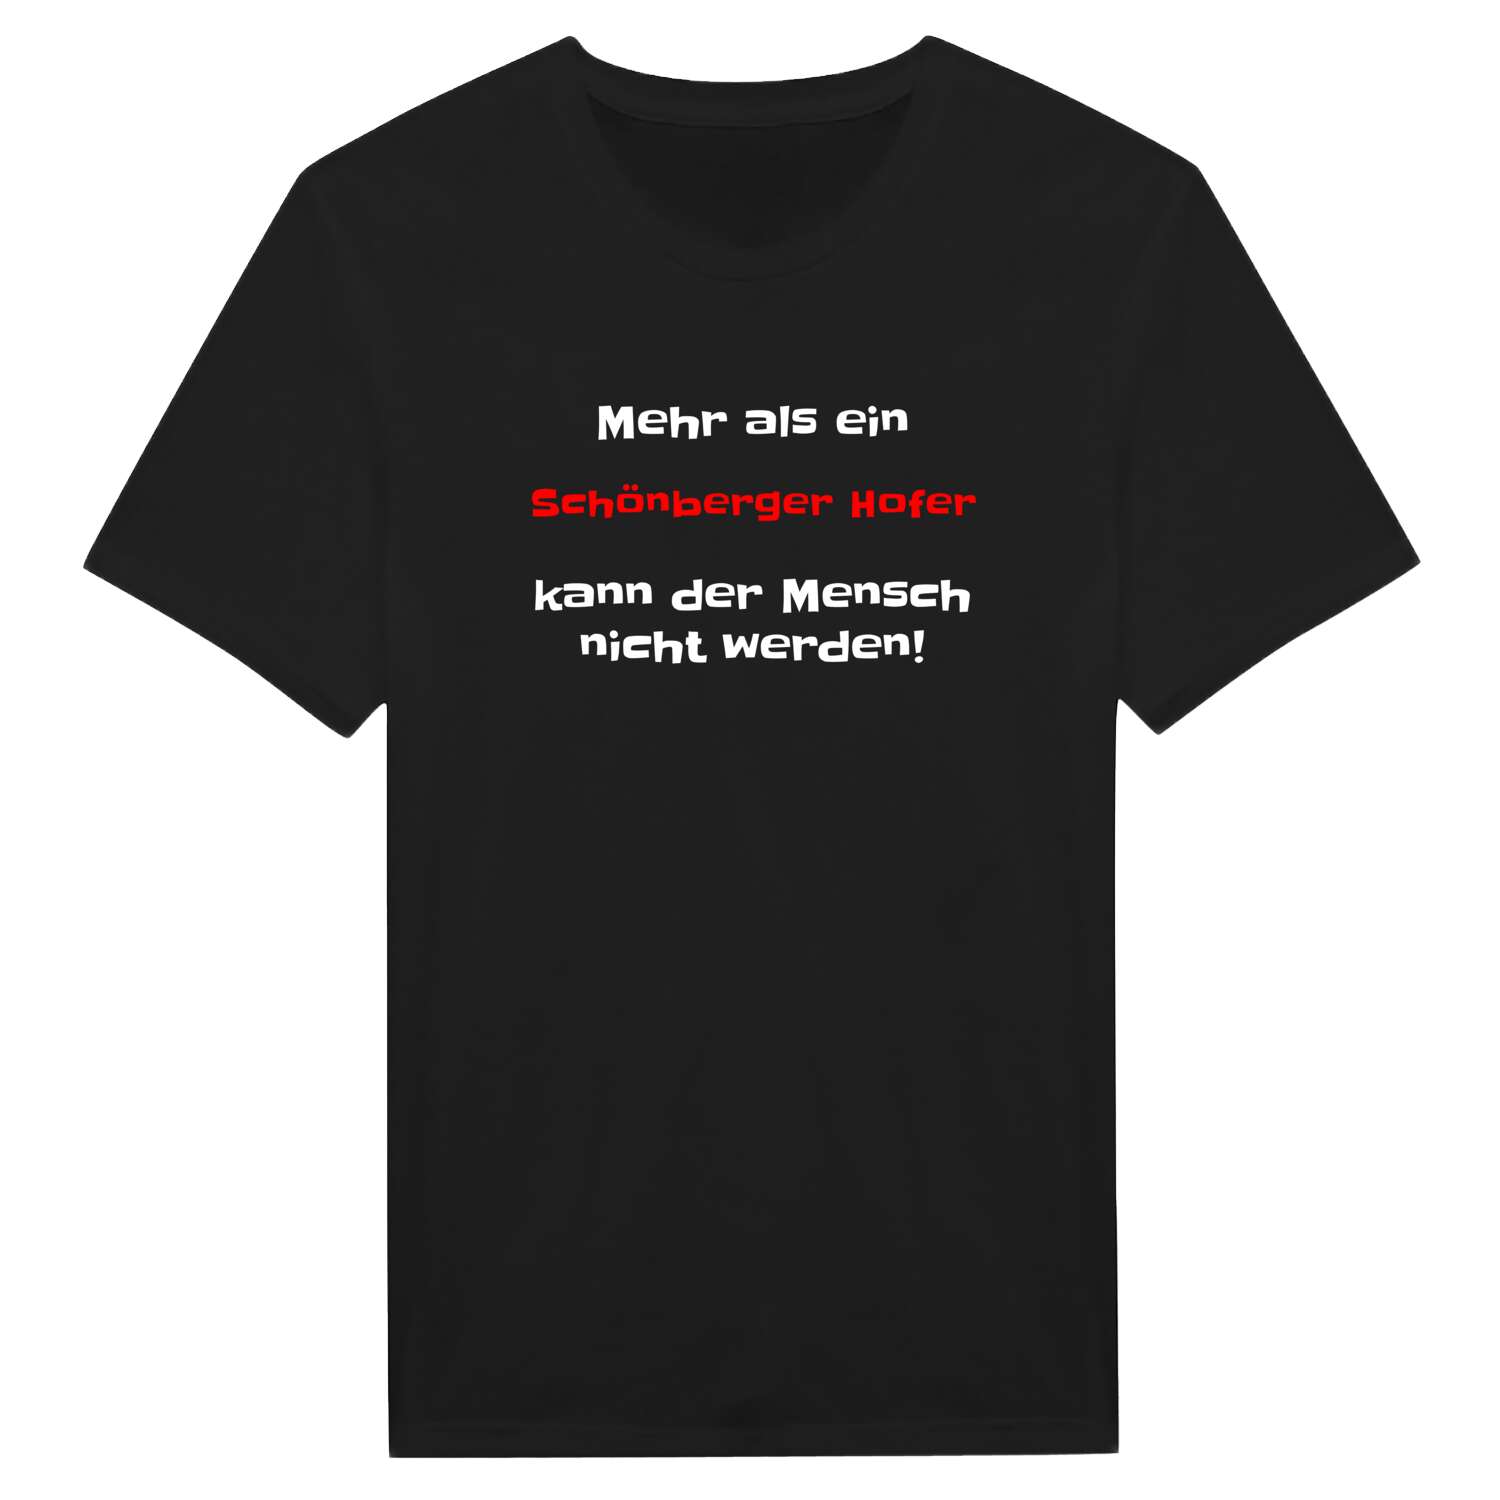 Schönberger Hof T-Shirt »Mehr als ein«